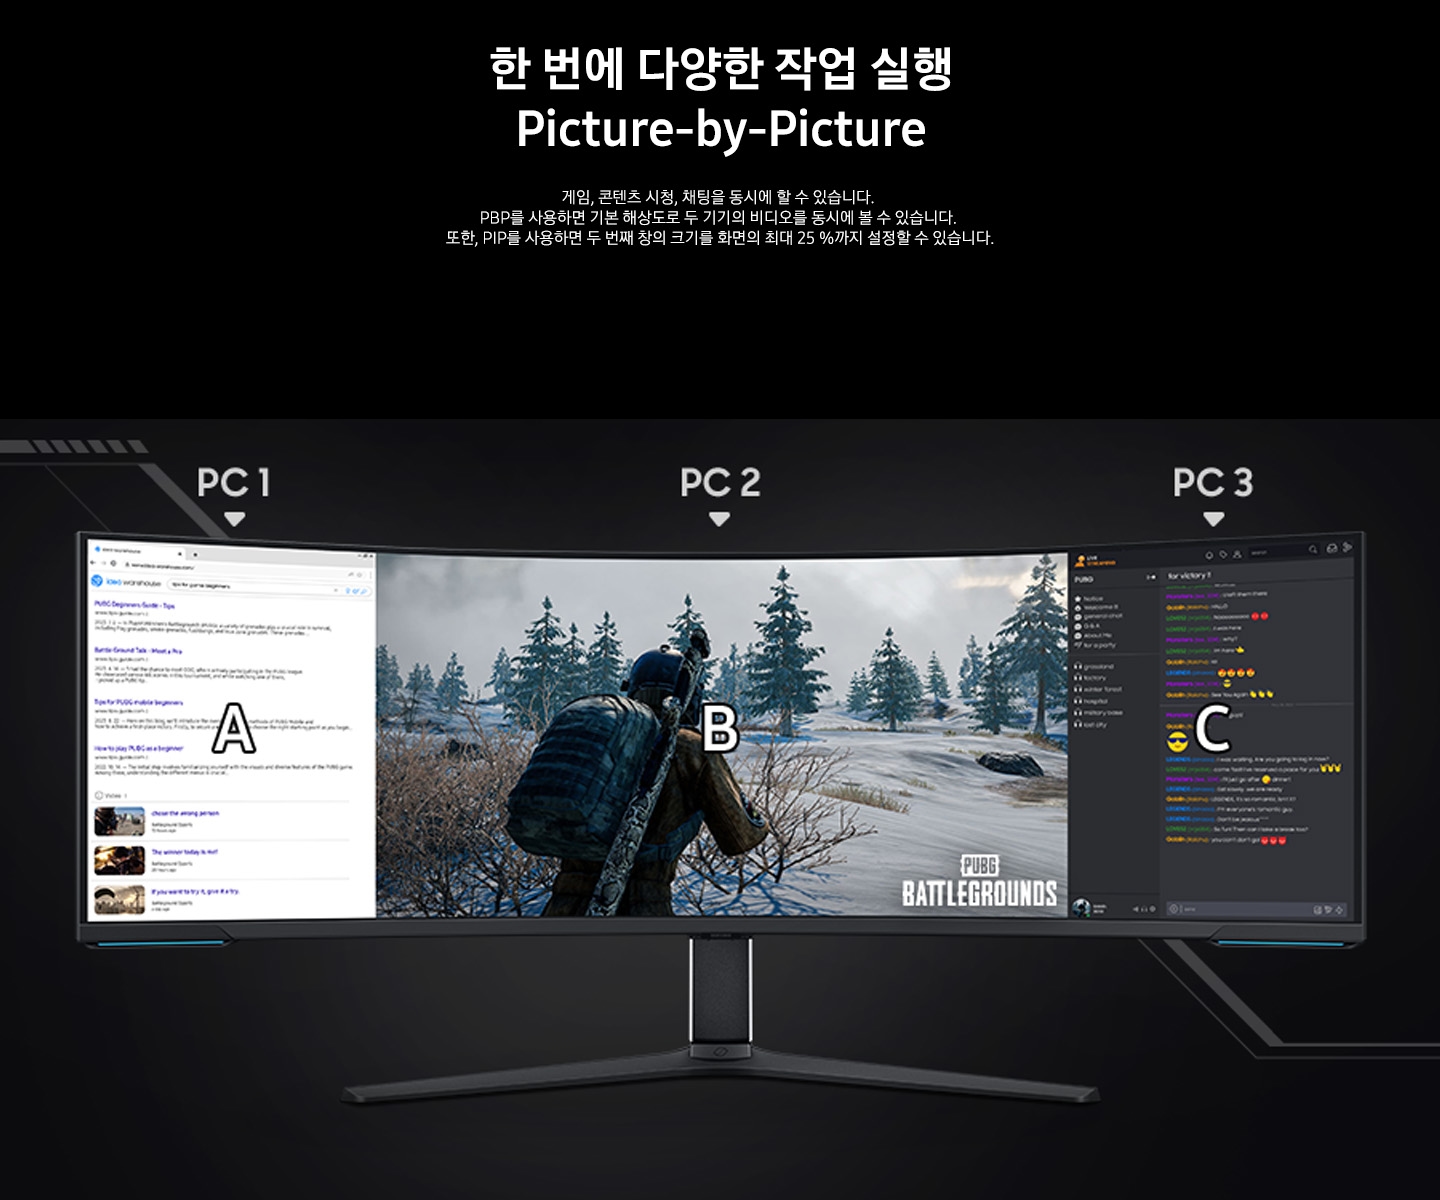 모니터의 일부를 다른 PC와 연결해 SUB 화면으로 게임을 플레이하는 장면을 보여주고 있습니다. 